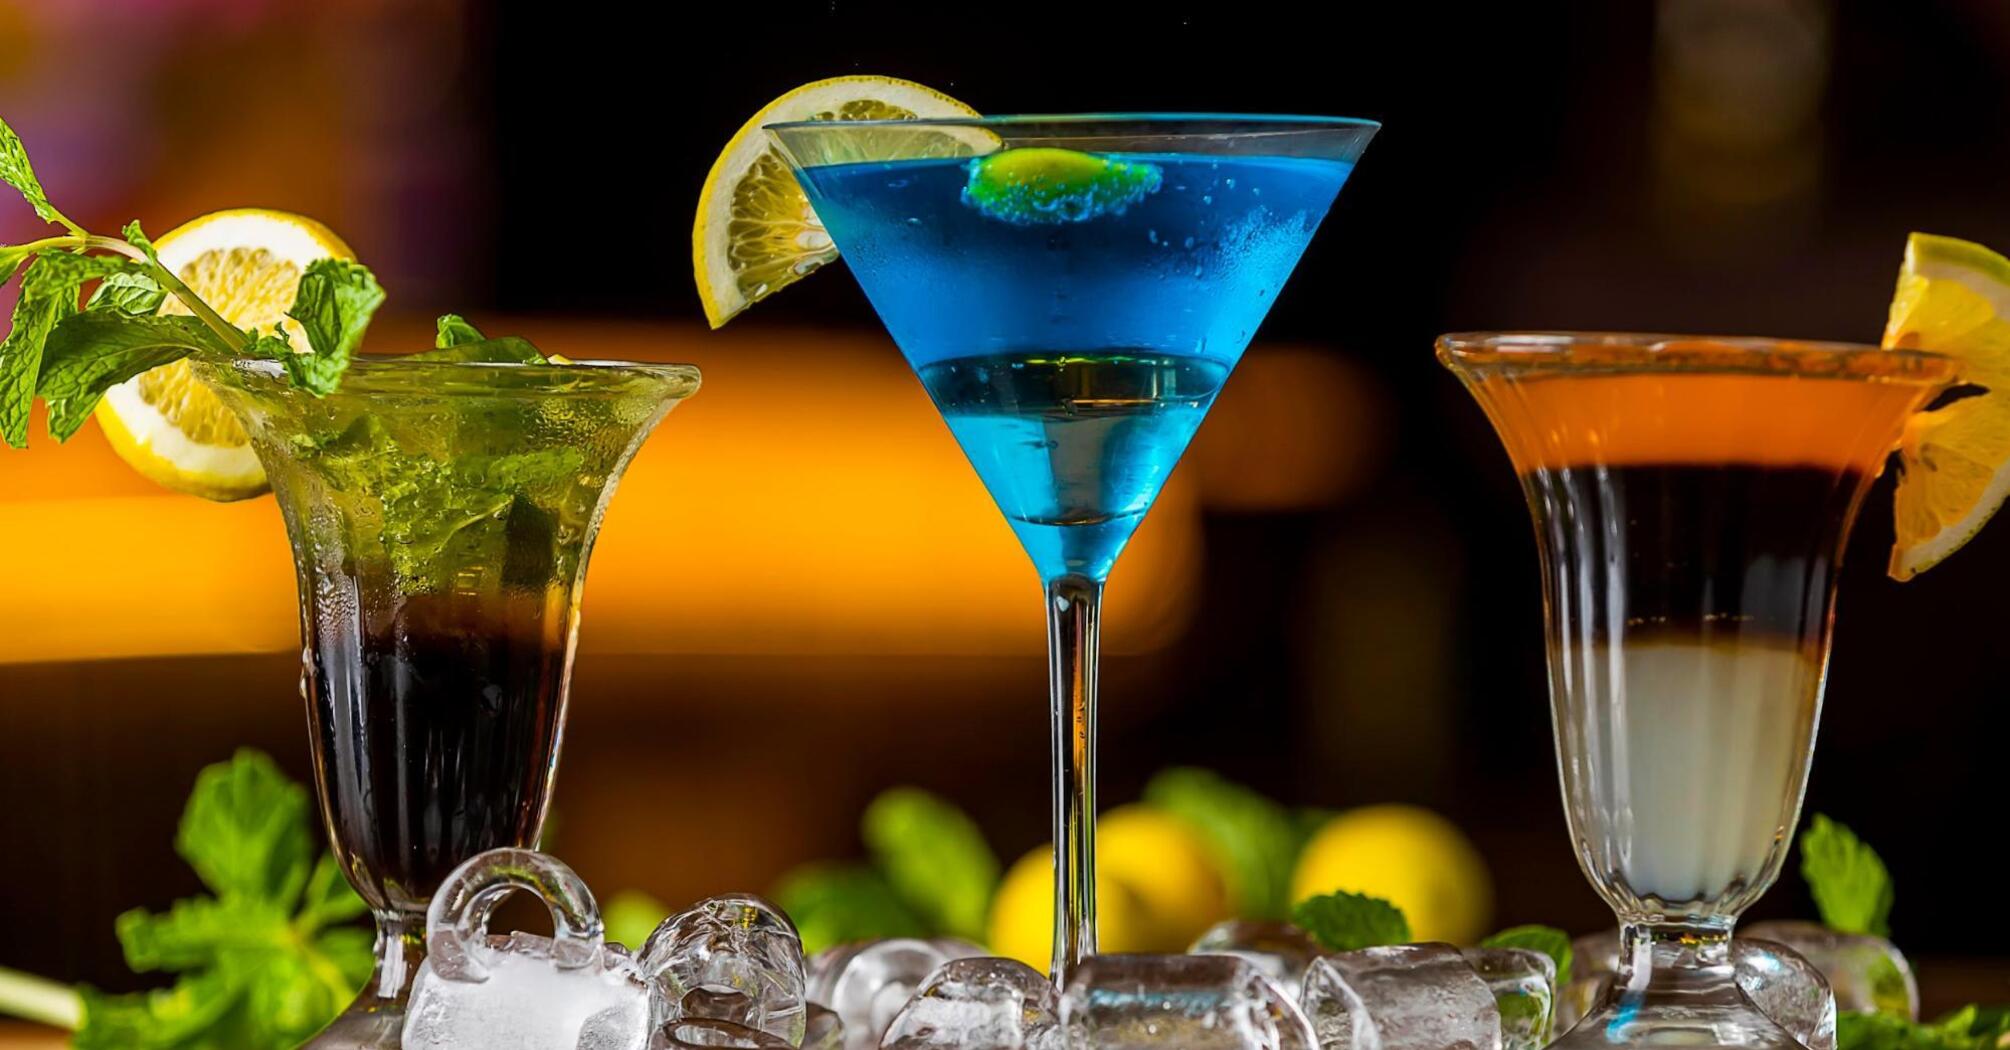 Three exquisite cocktails